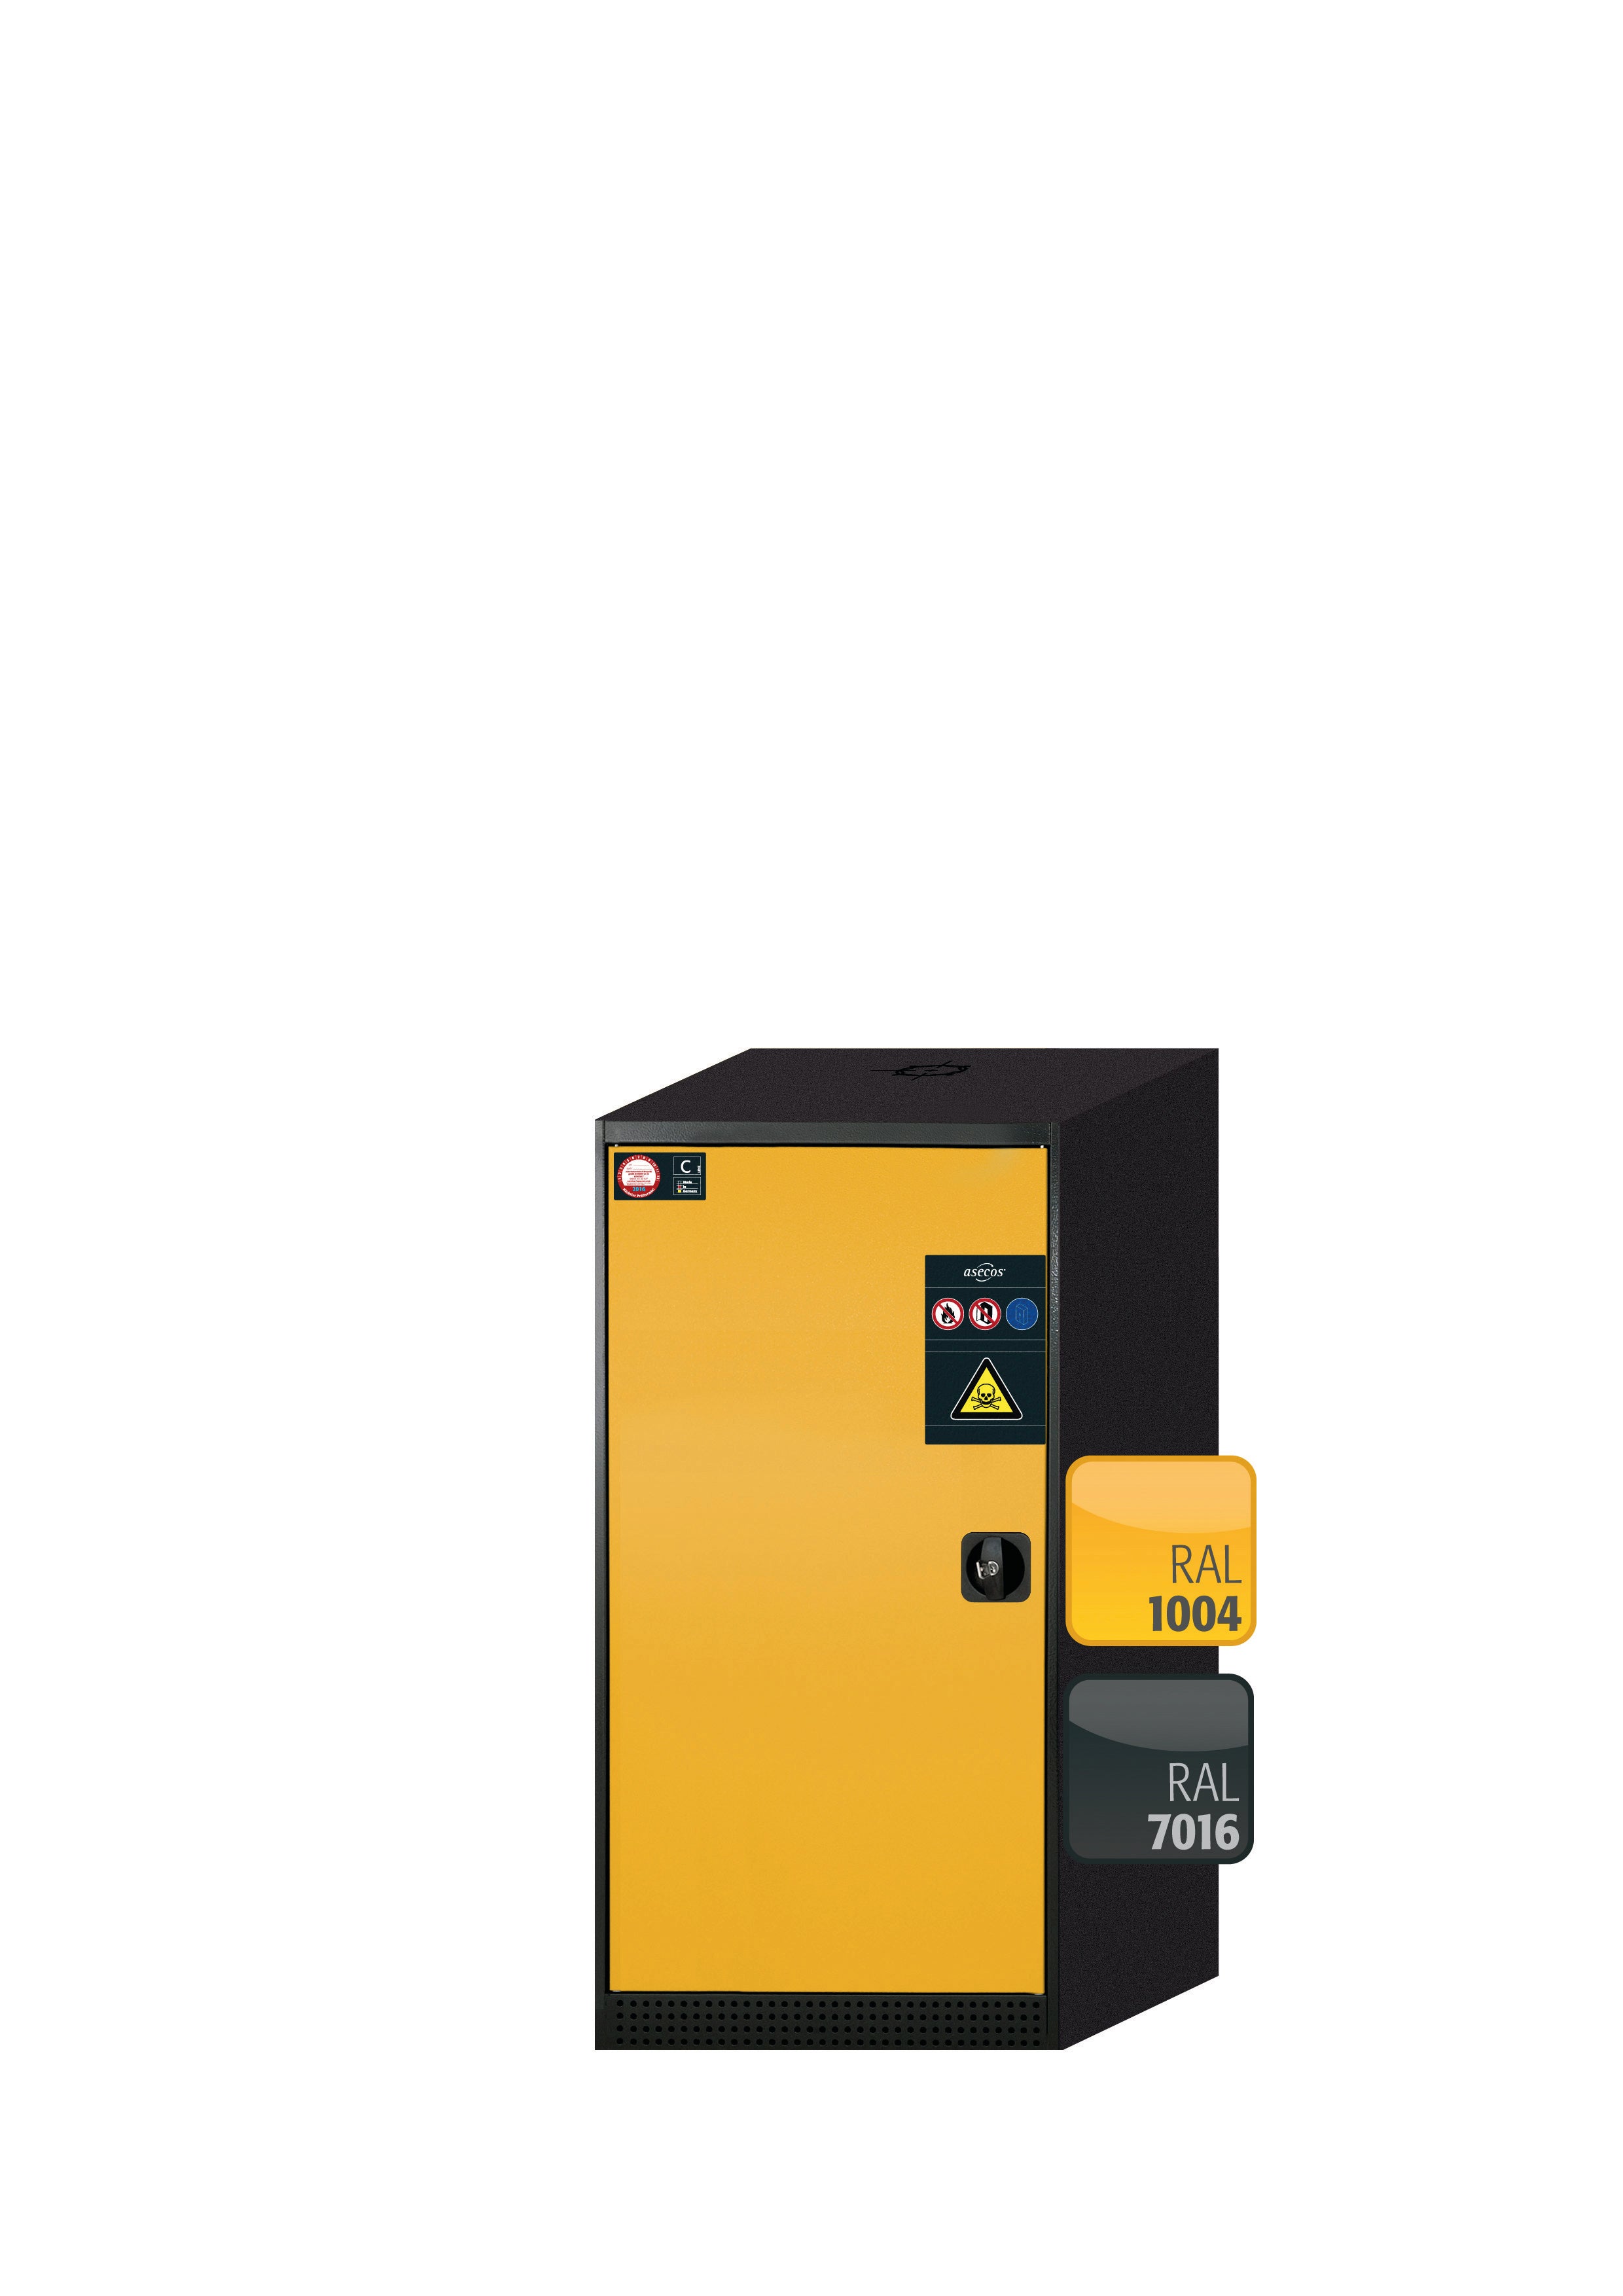 Armoire chimique CS-CLASSIC modèle CS.110.054 en jaune sécurité RAL 1004 avec 3 étagères coulissantes AbZ (tôle d'acier/polypropylène)